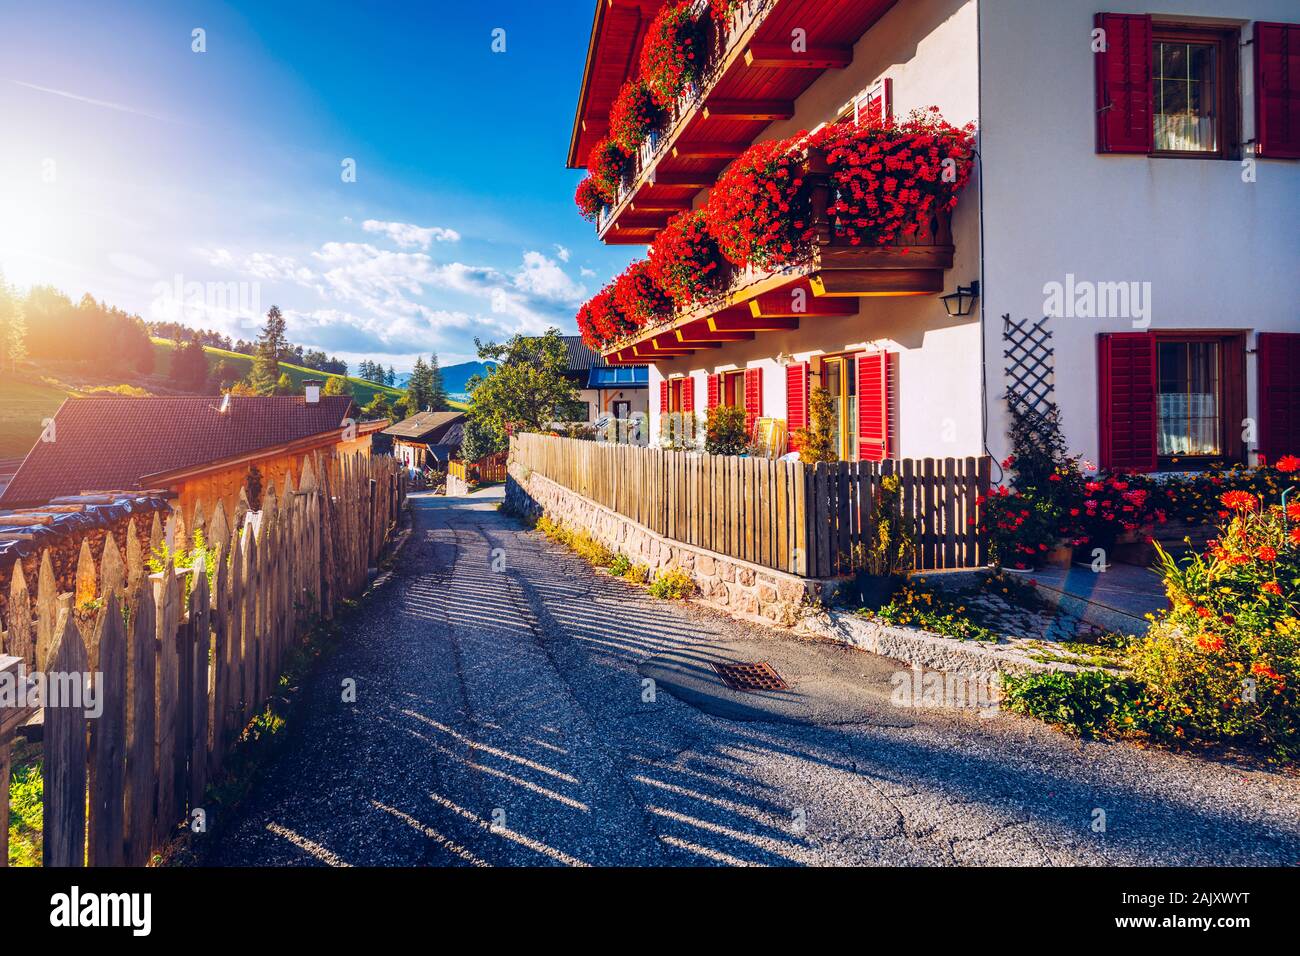 Blick auf die Straße von Santa Maddalena (Santa Magdalena) Dorf, Val di Funes Tal, Trentino Alto Adige, Südtirol, Italien, Europa. Santa Maddalena Stockfoto